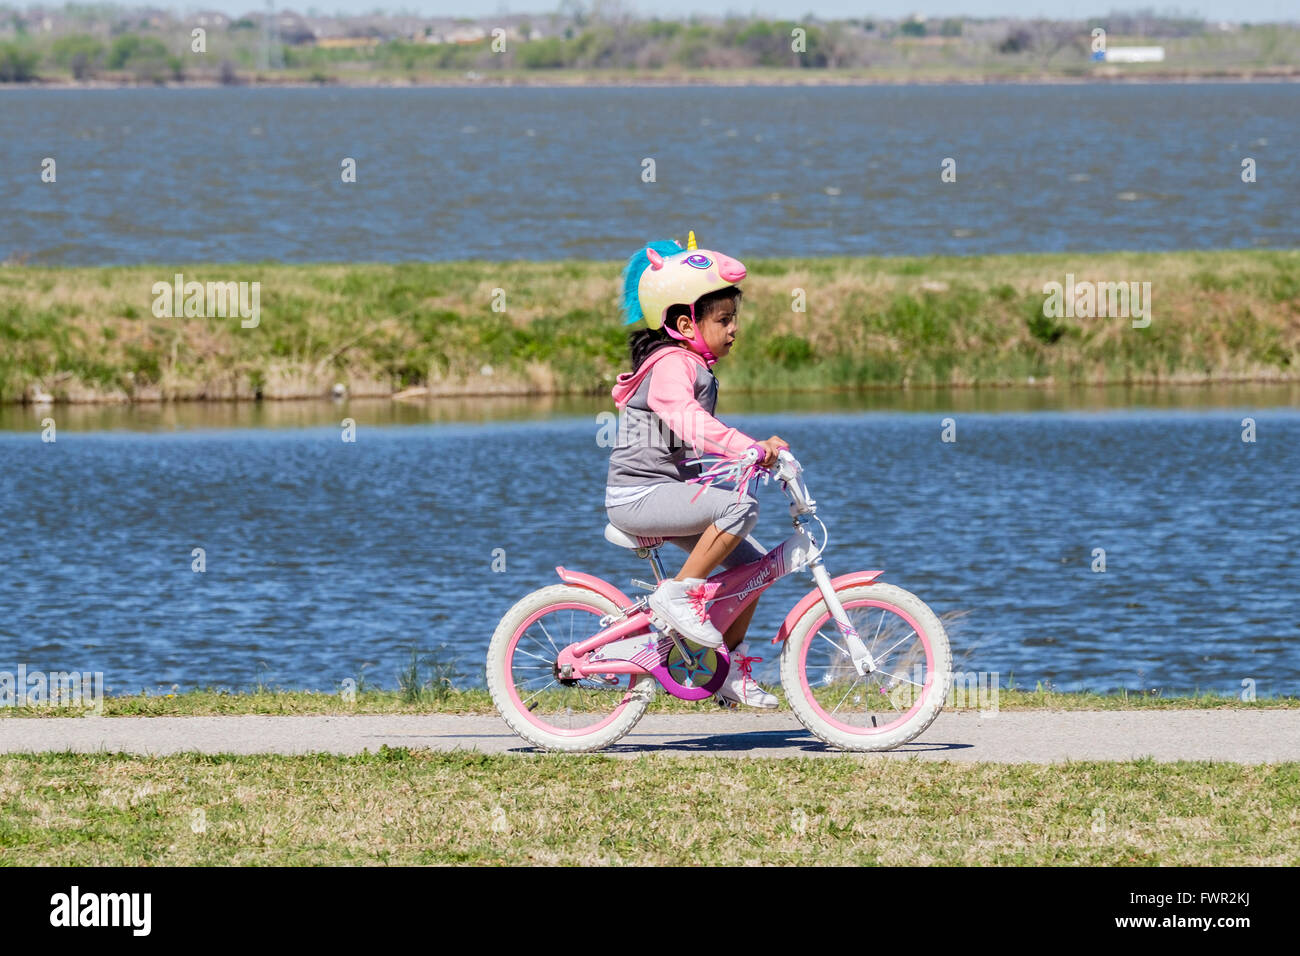 Une jeune fille hispanique avec une licorne helmit rides son vélo sur les sentiers du lac Overholser, Oklahoma City, Oklahoma, USA. Banque D'Images